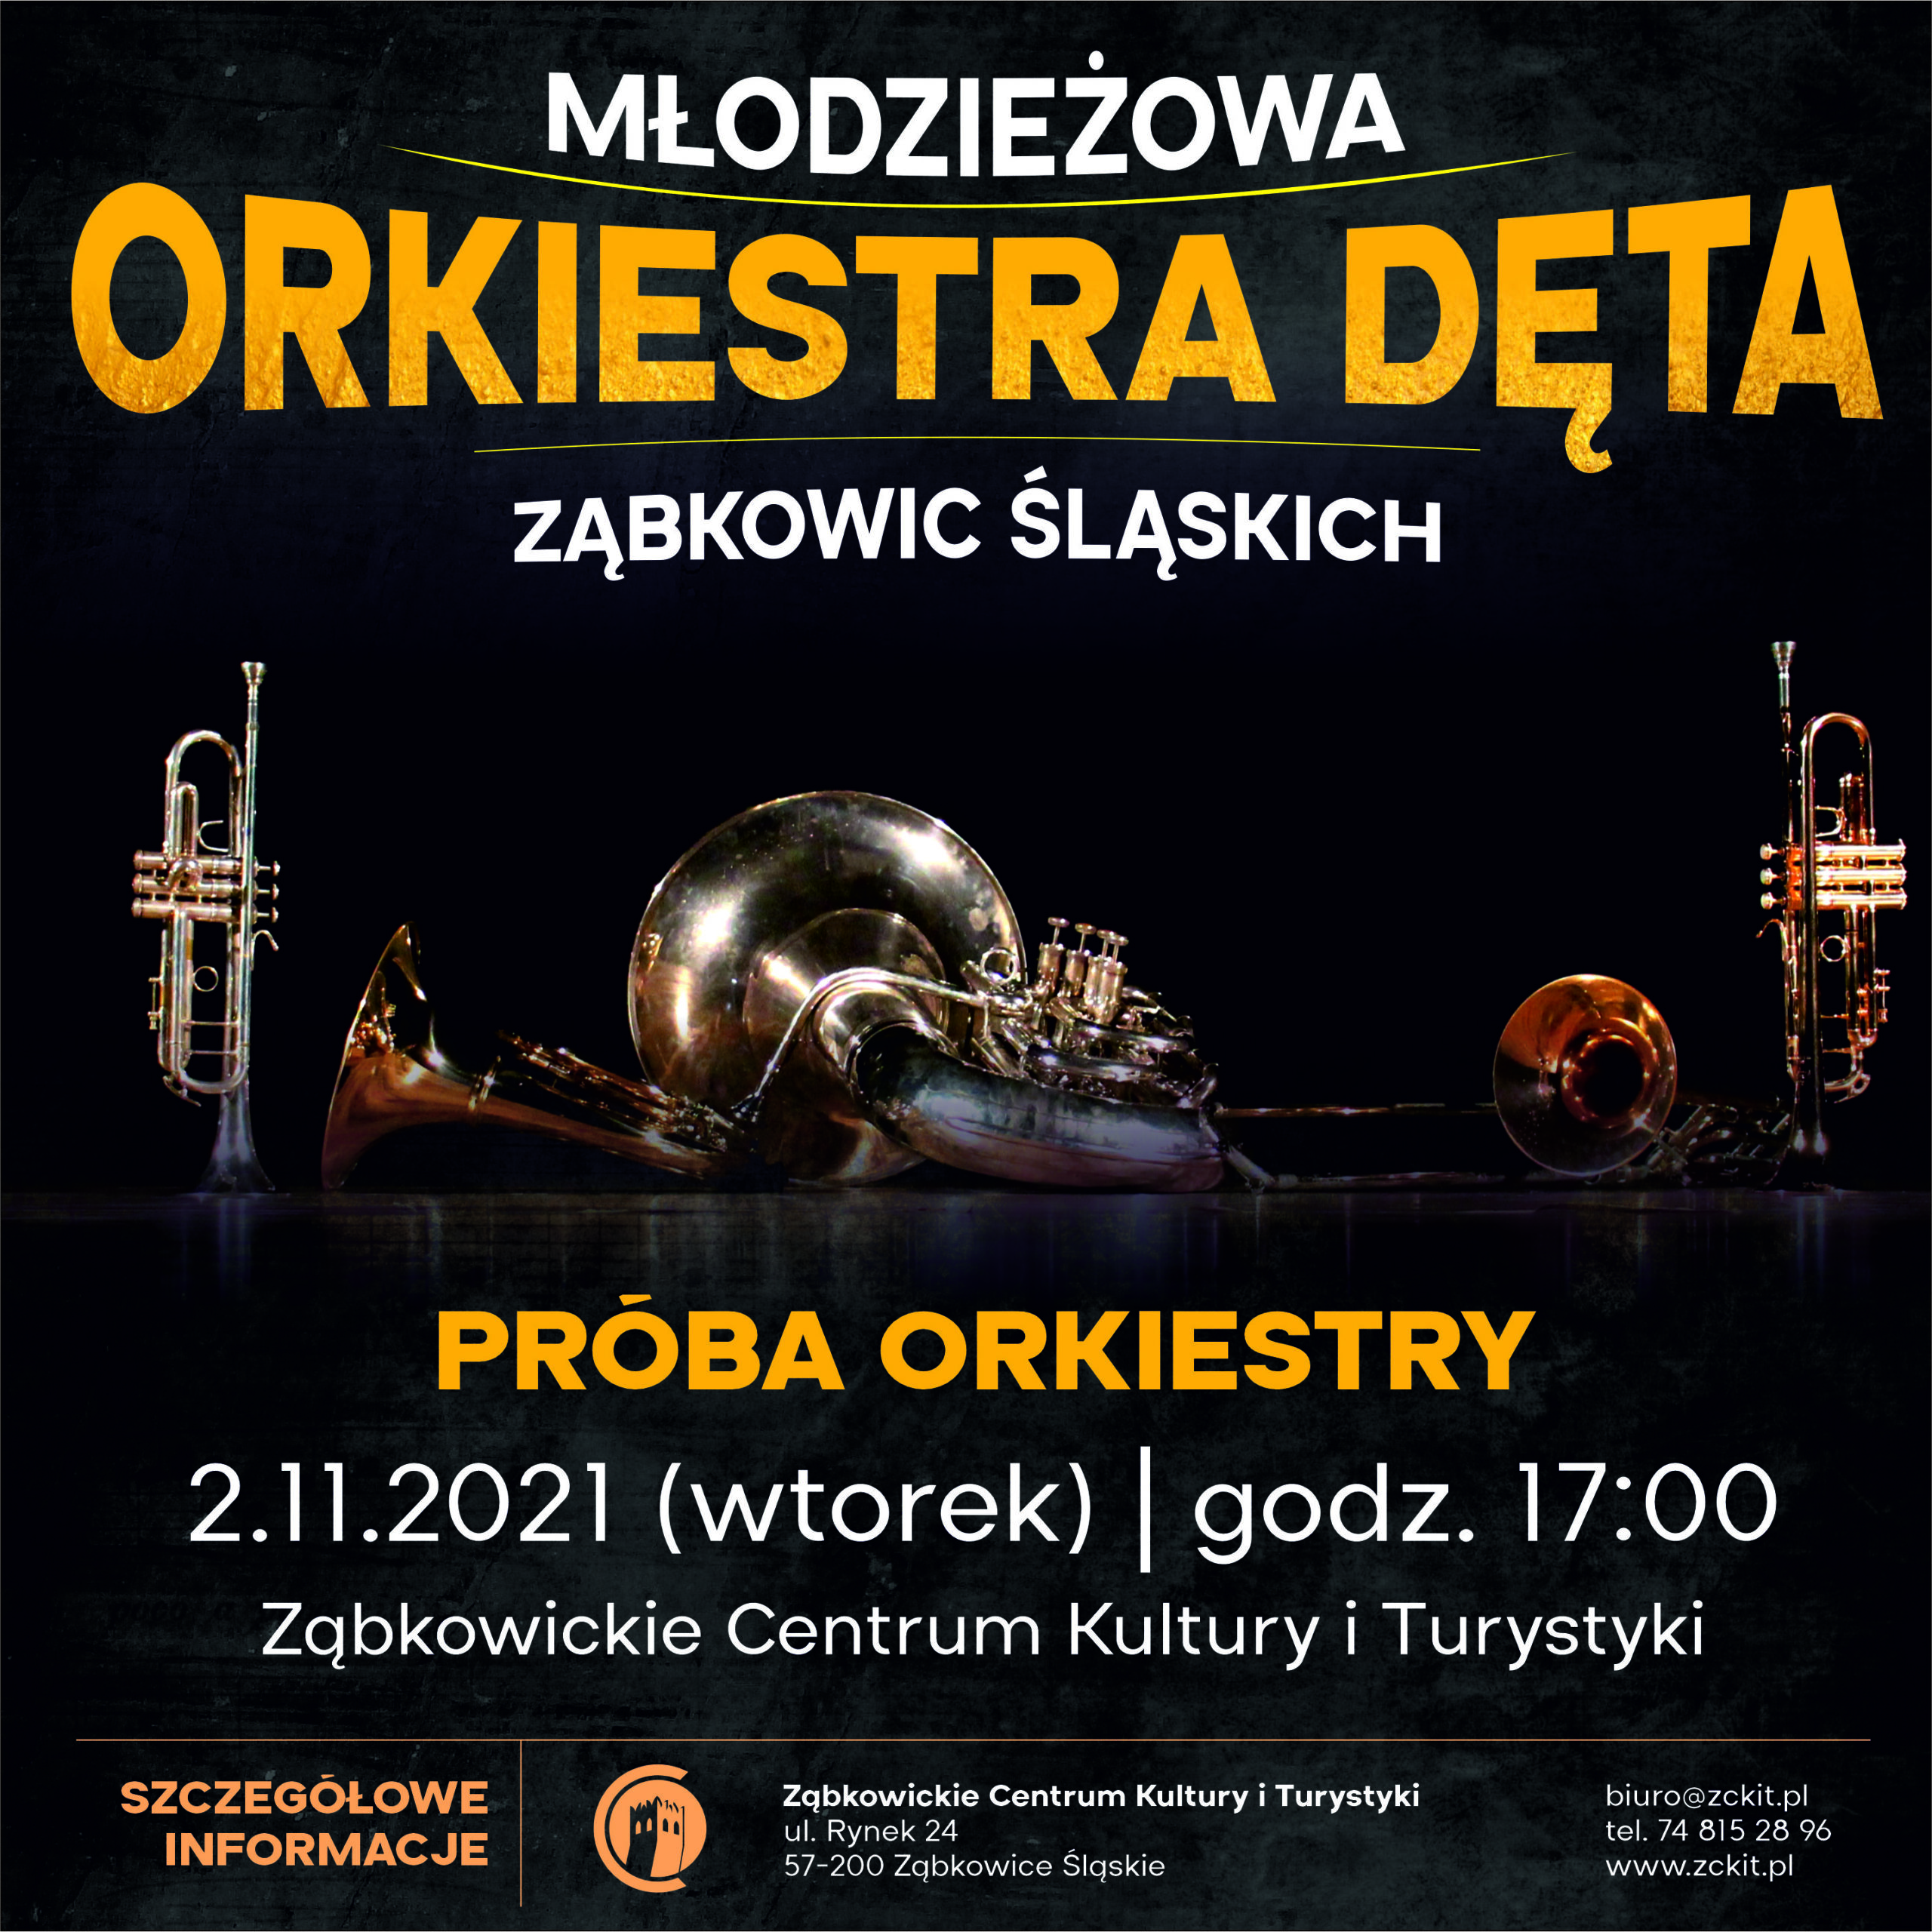 MŁODZIEŻOWA ORKIESTRA DETA ZĄBKOWIC ŚLĄSKICH próba orkiestry 21 listopada 2021 godzina 17:00 w ZCKiT